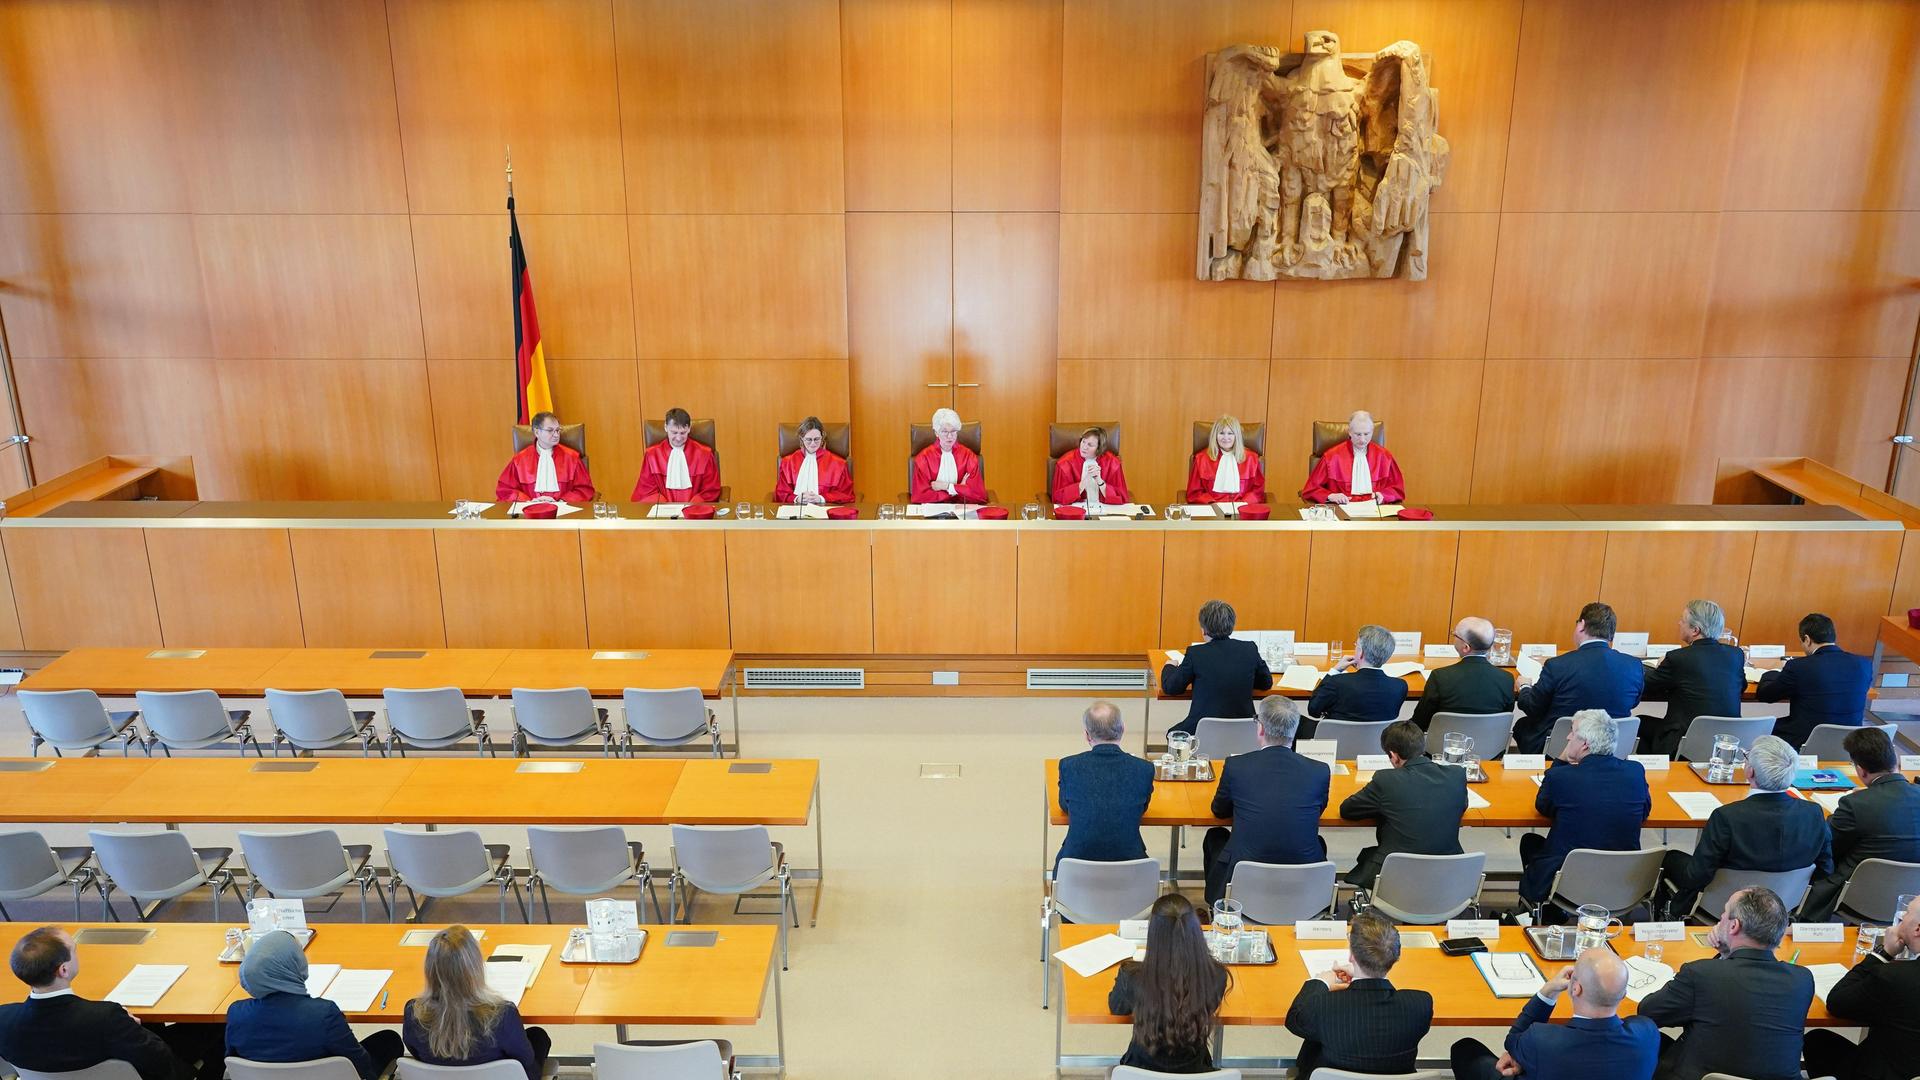 Extremismus - Union bricht Gespräche über besseren Schutz des Verfassungsgerichts ab